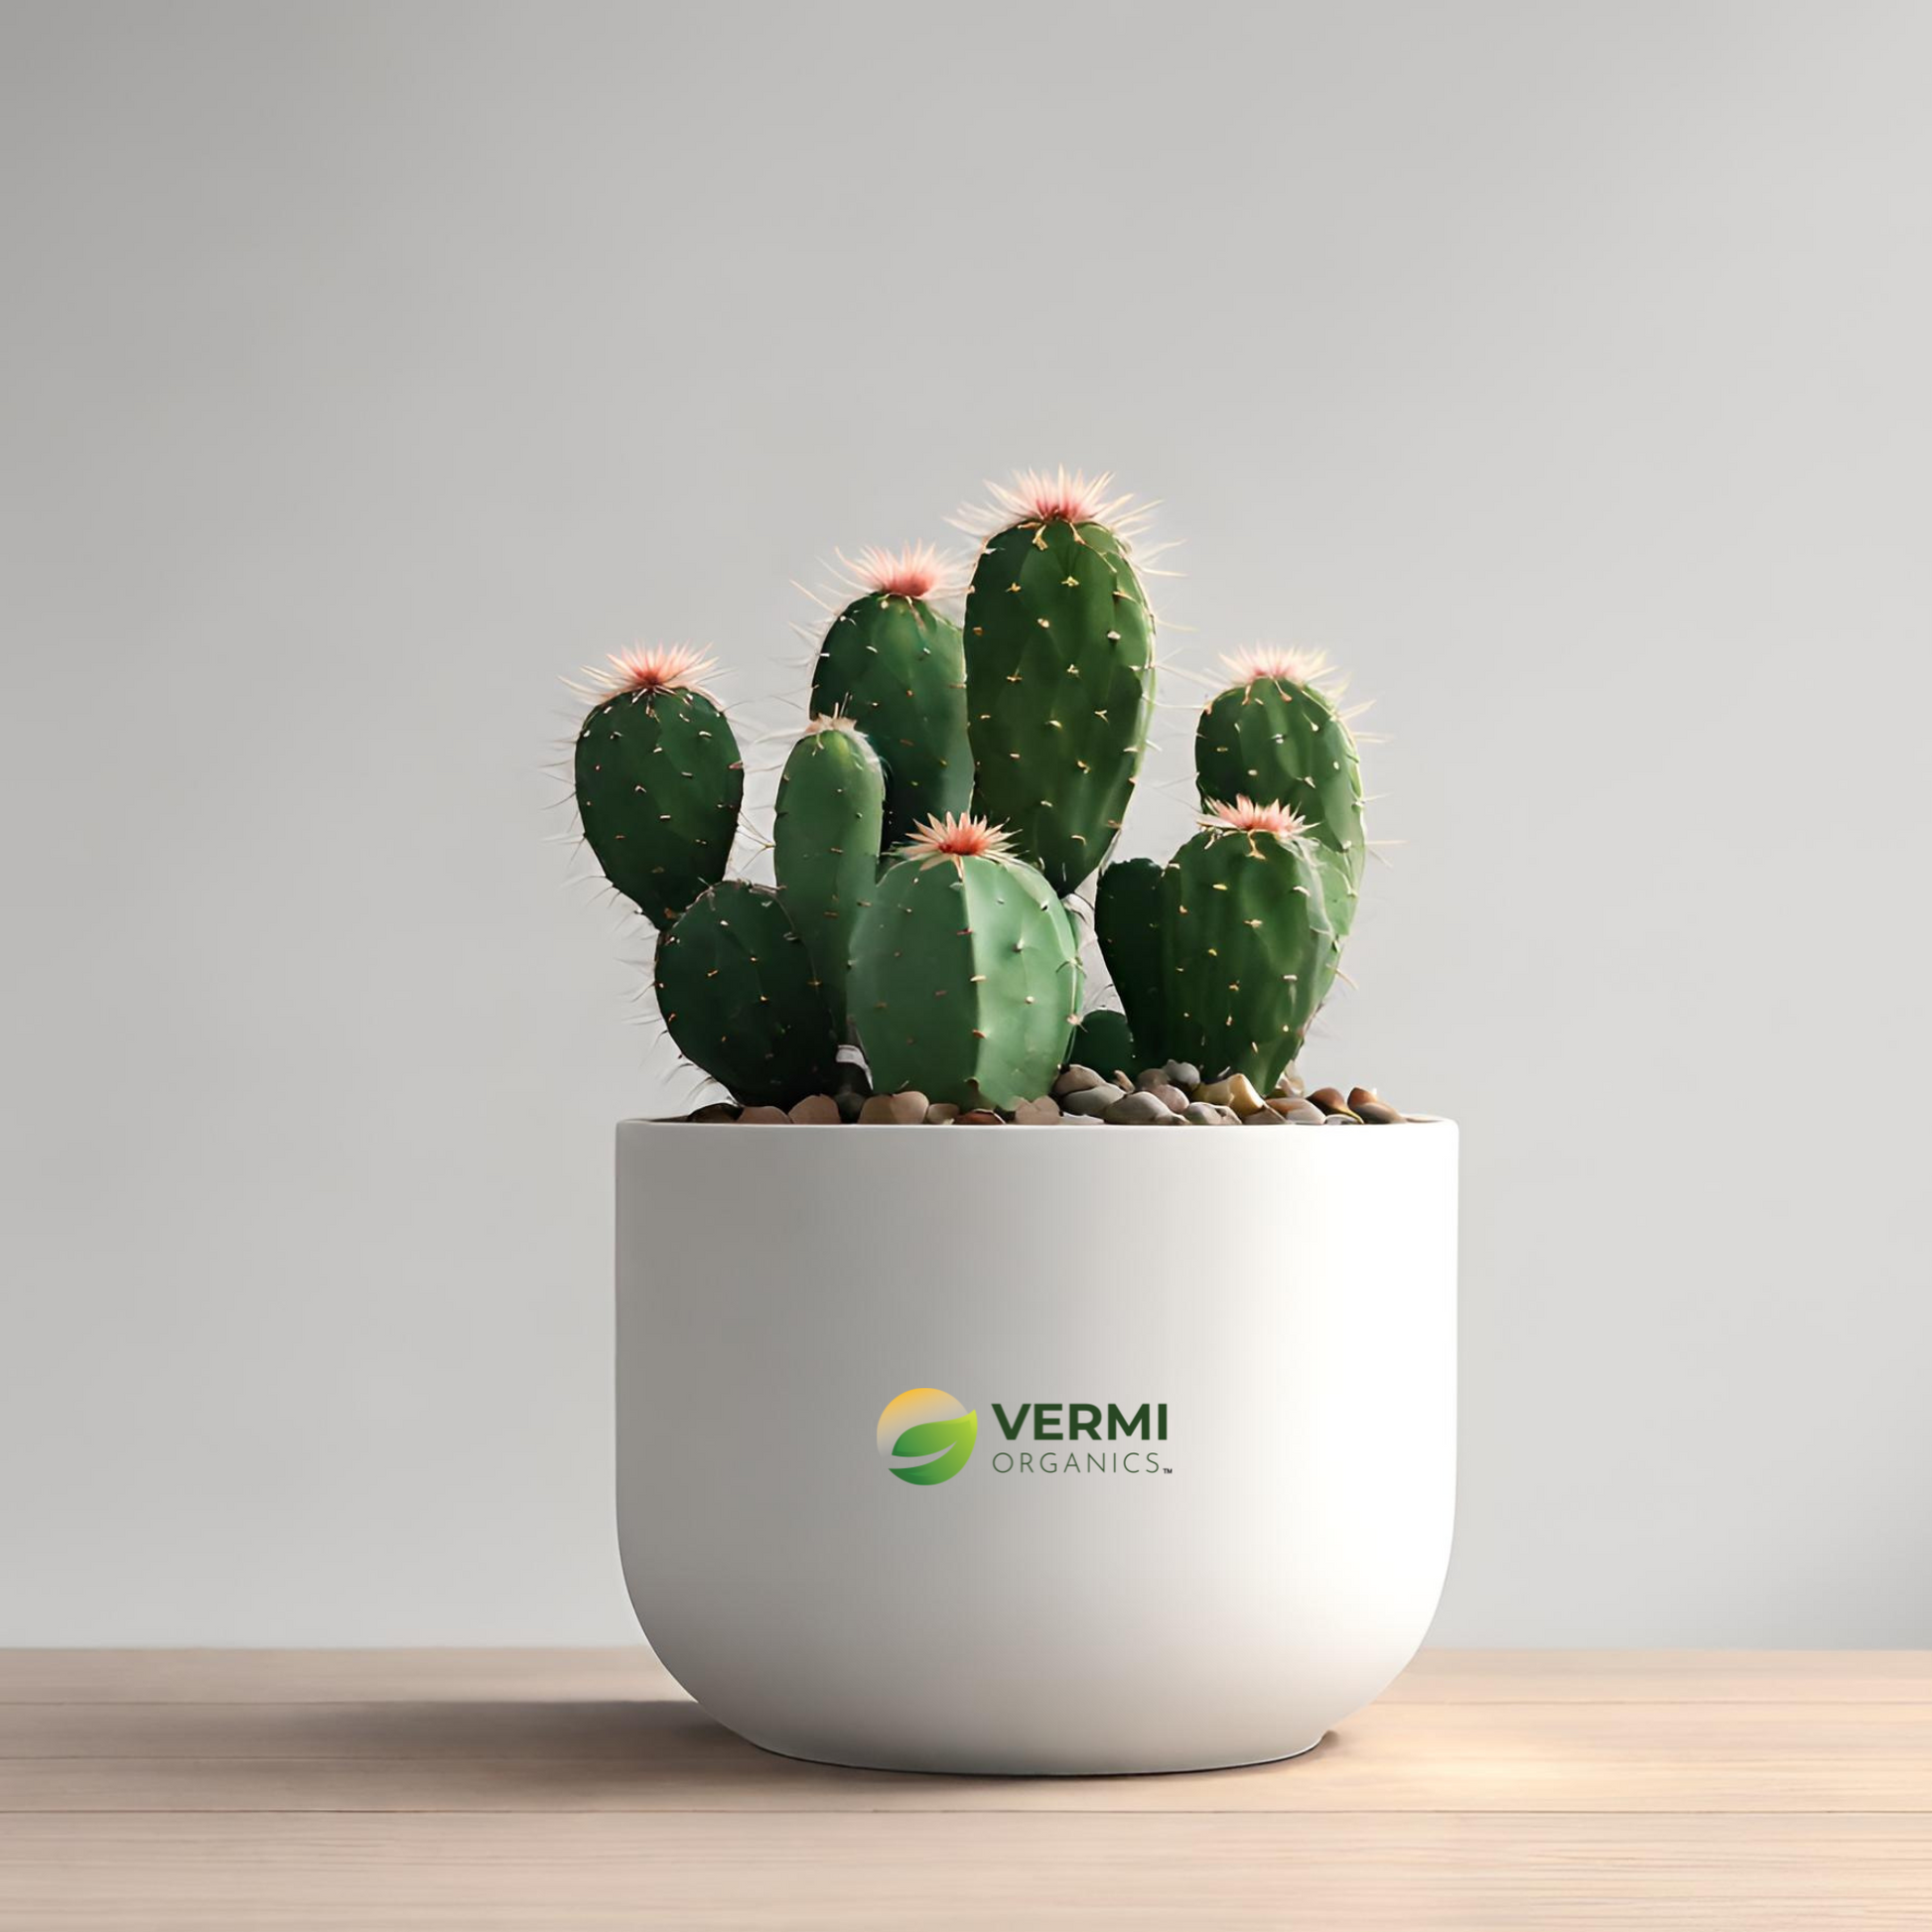 Maihueniopsis Cactus Plant